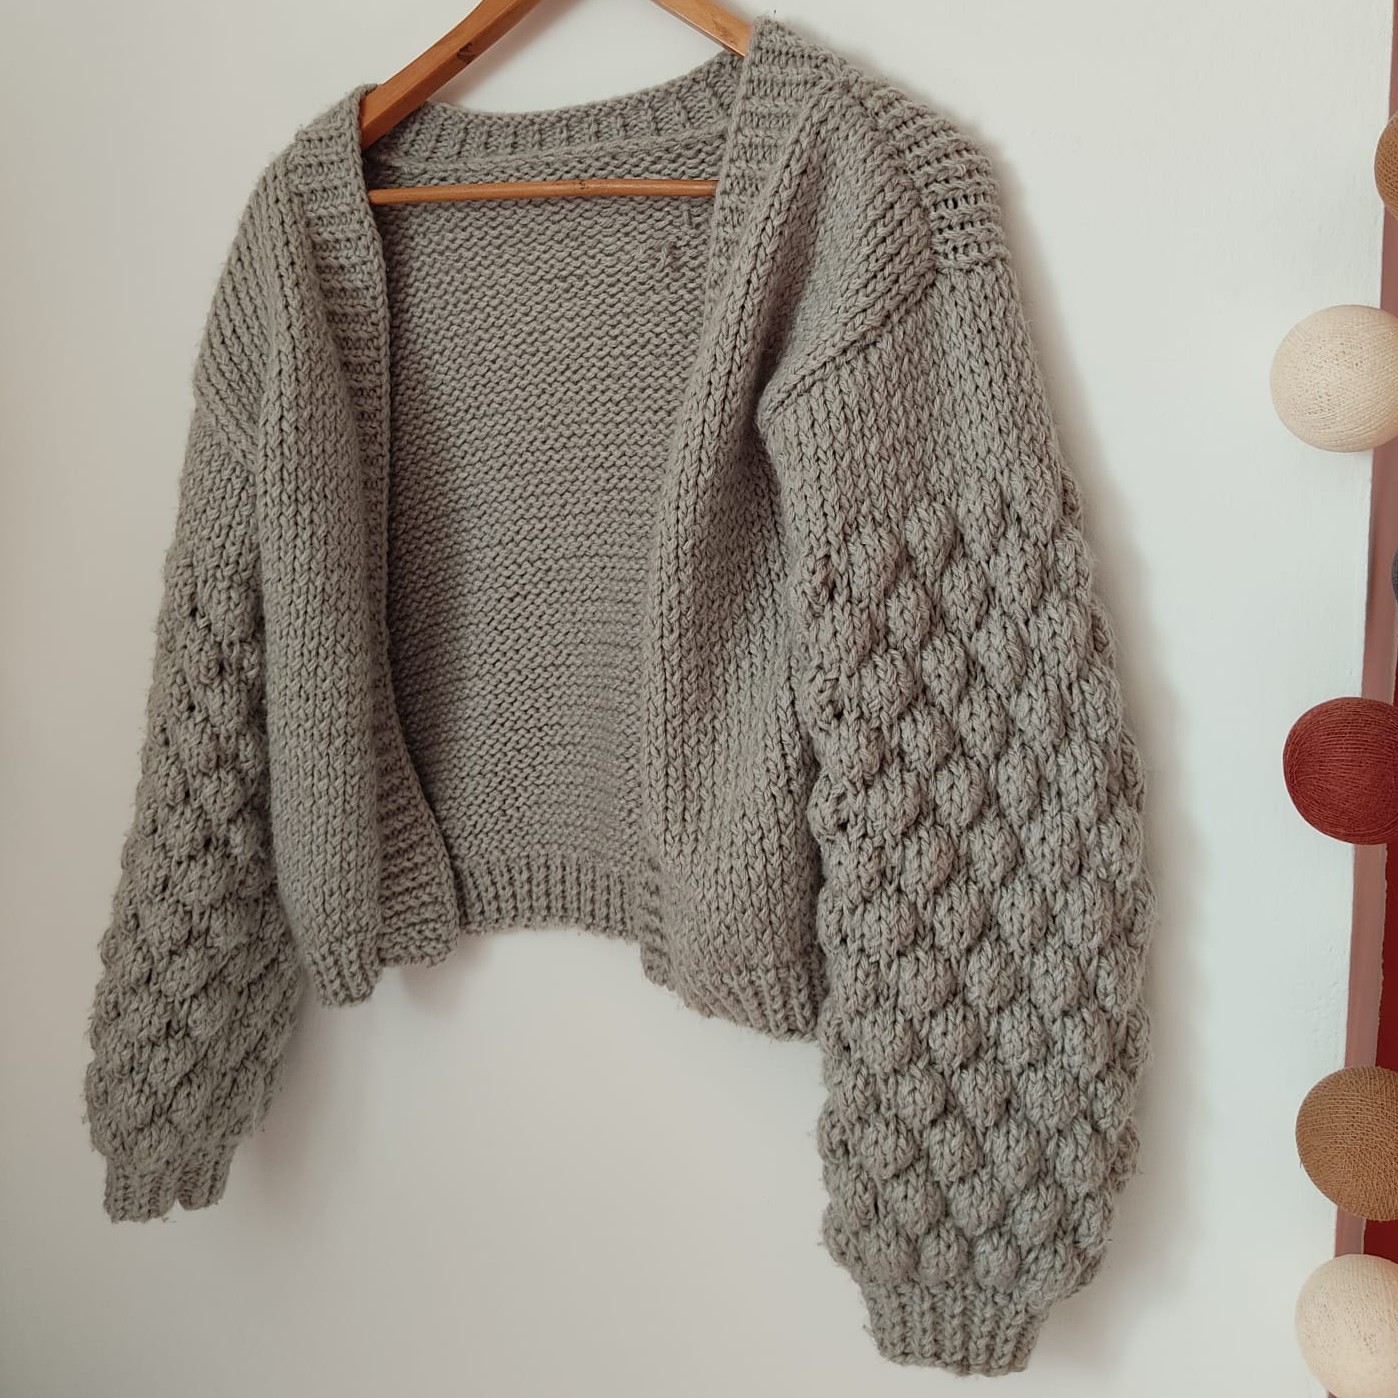 /img/knitting/CardiganBulles3.jpeg